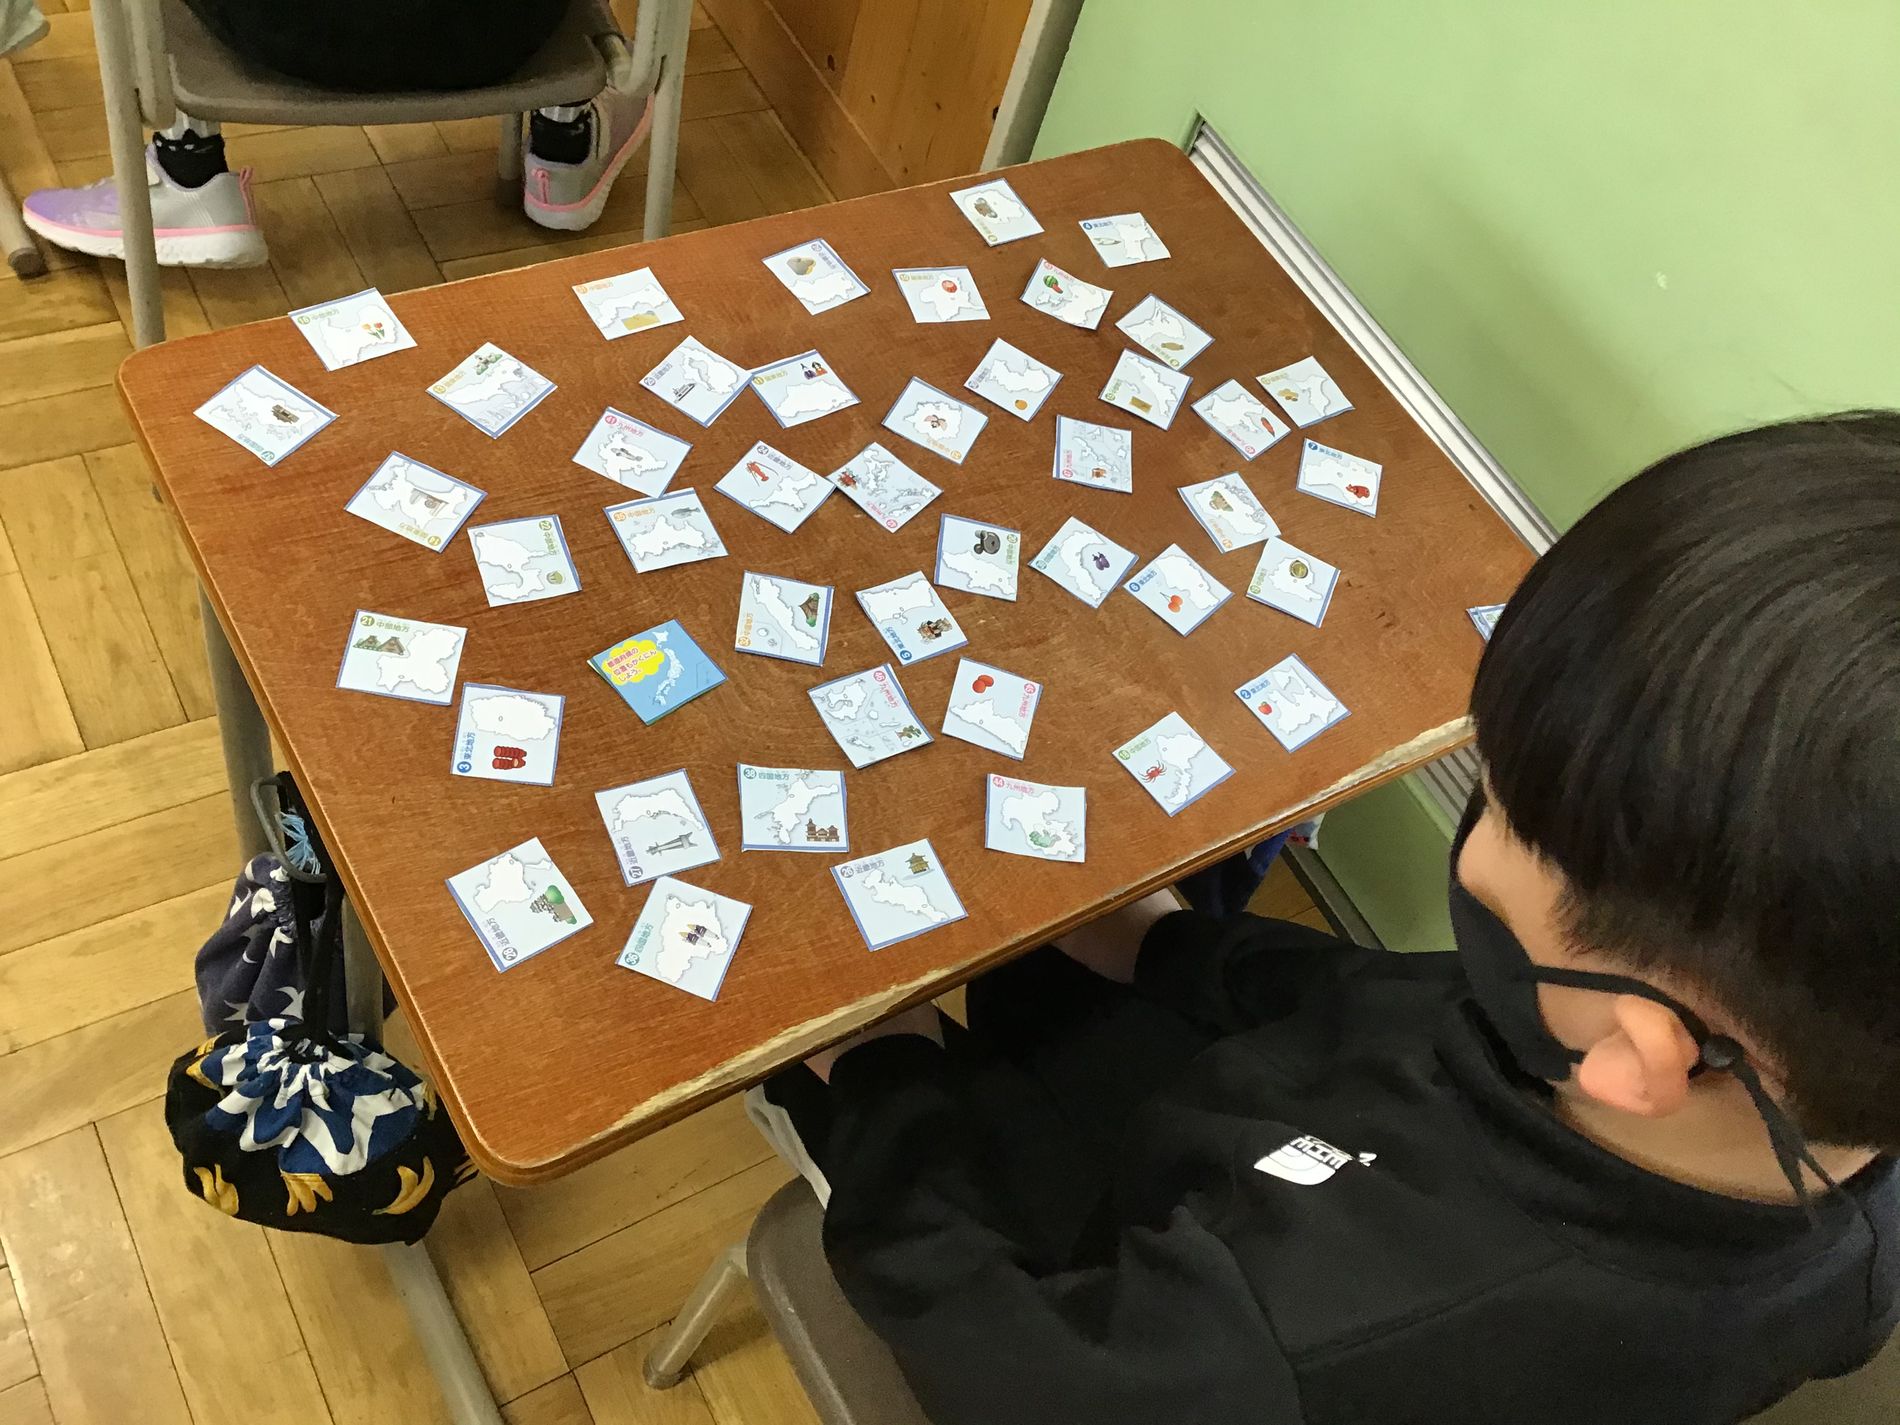 教室の机に向かった男子児童が机上に散らばった、各都道府県のカードを眺めている写真